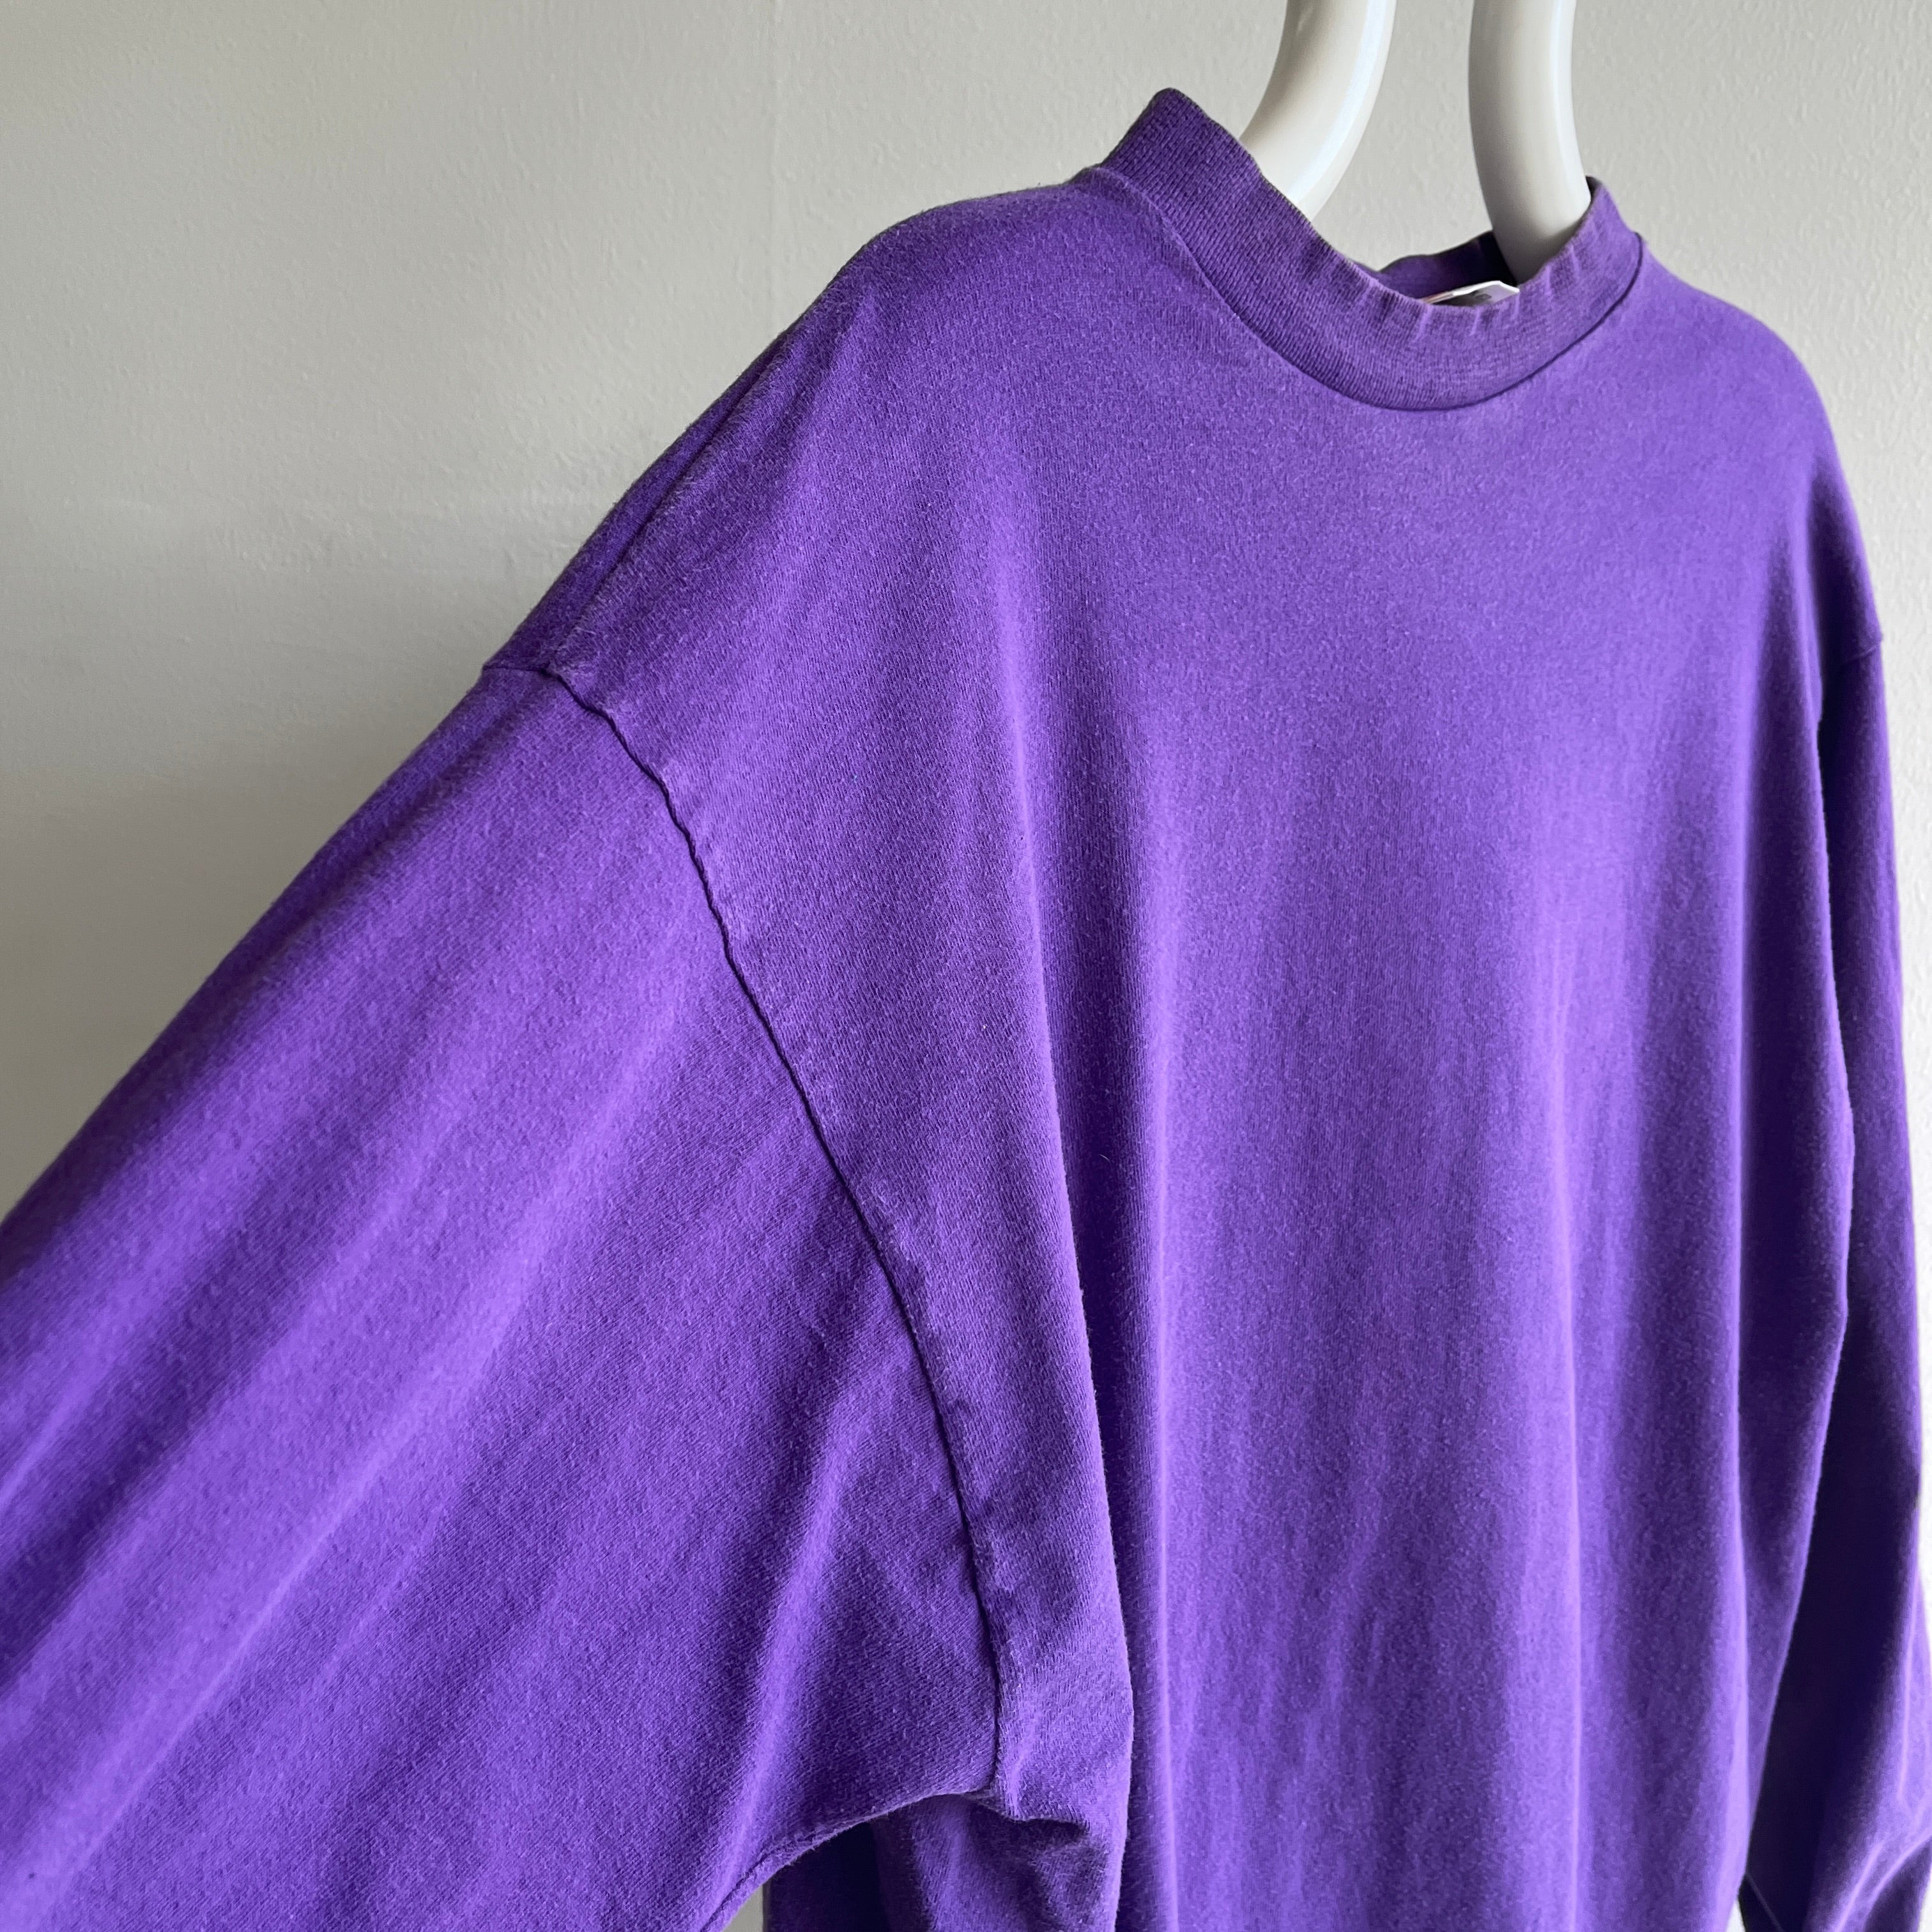 T-shirt violet à manches longues vierge des années 1980 - coton peigné